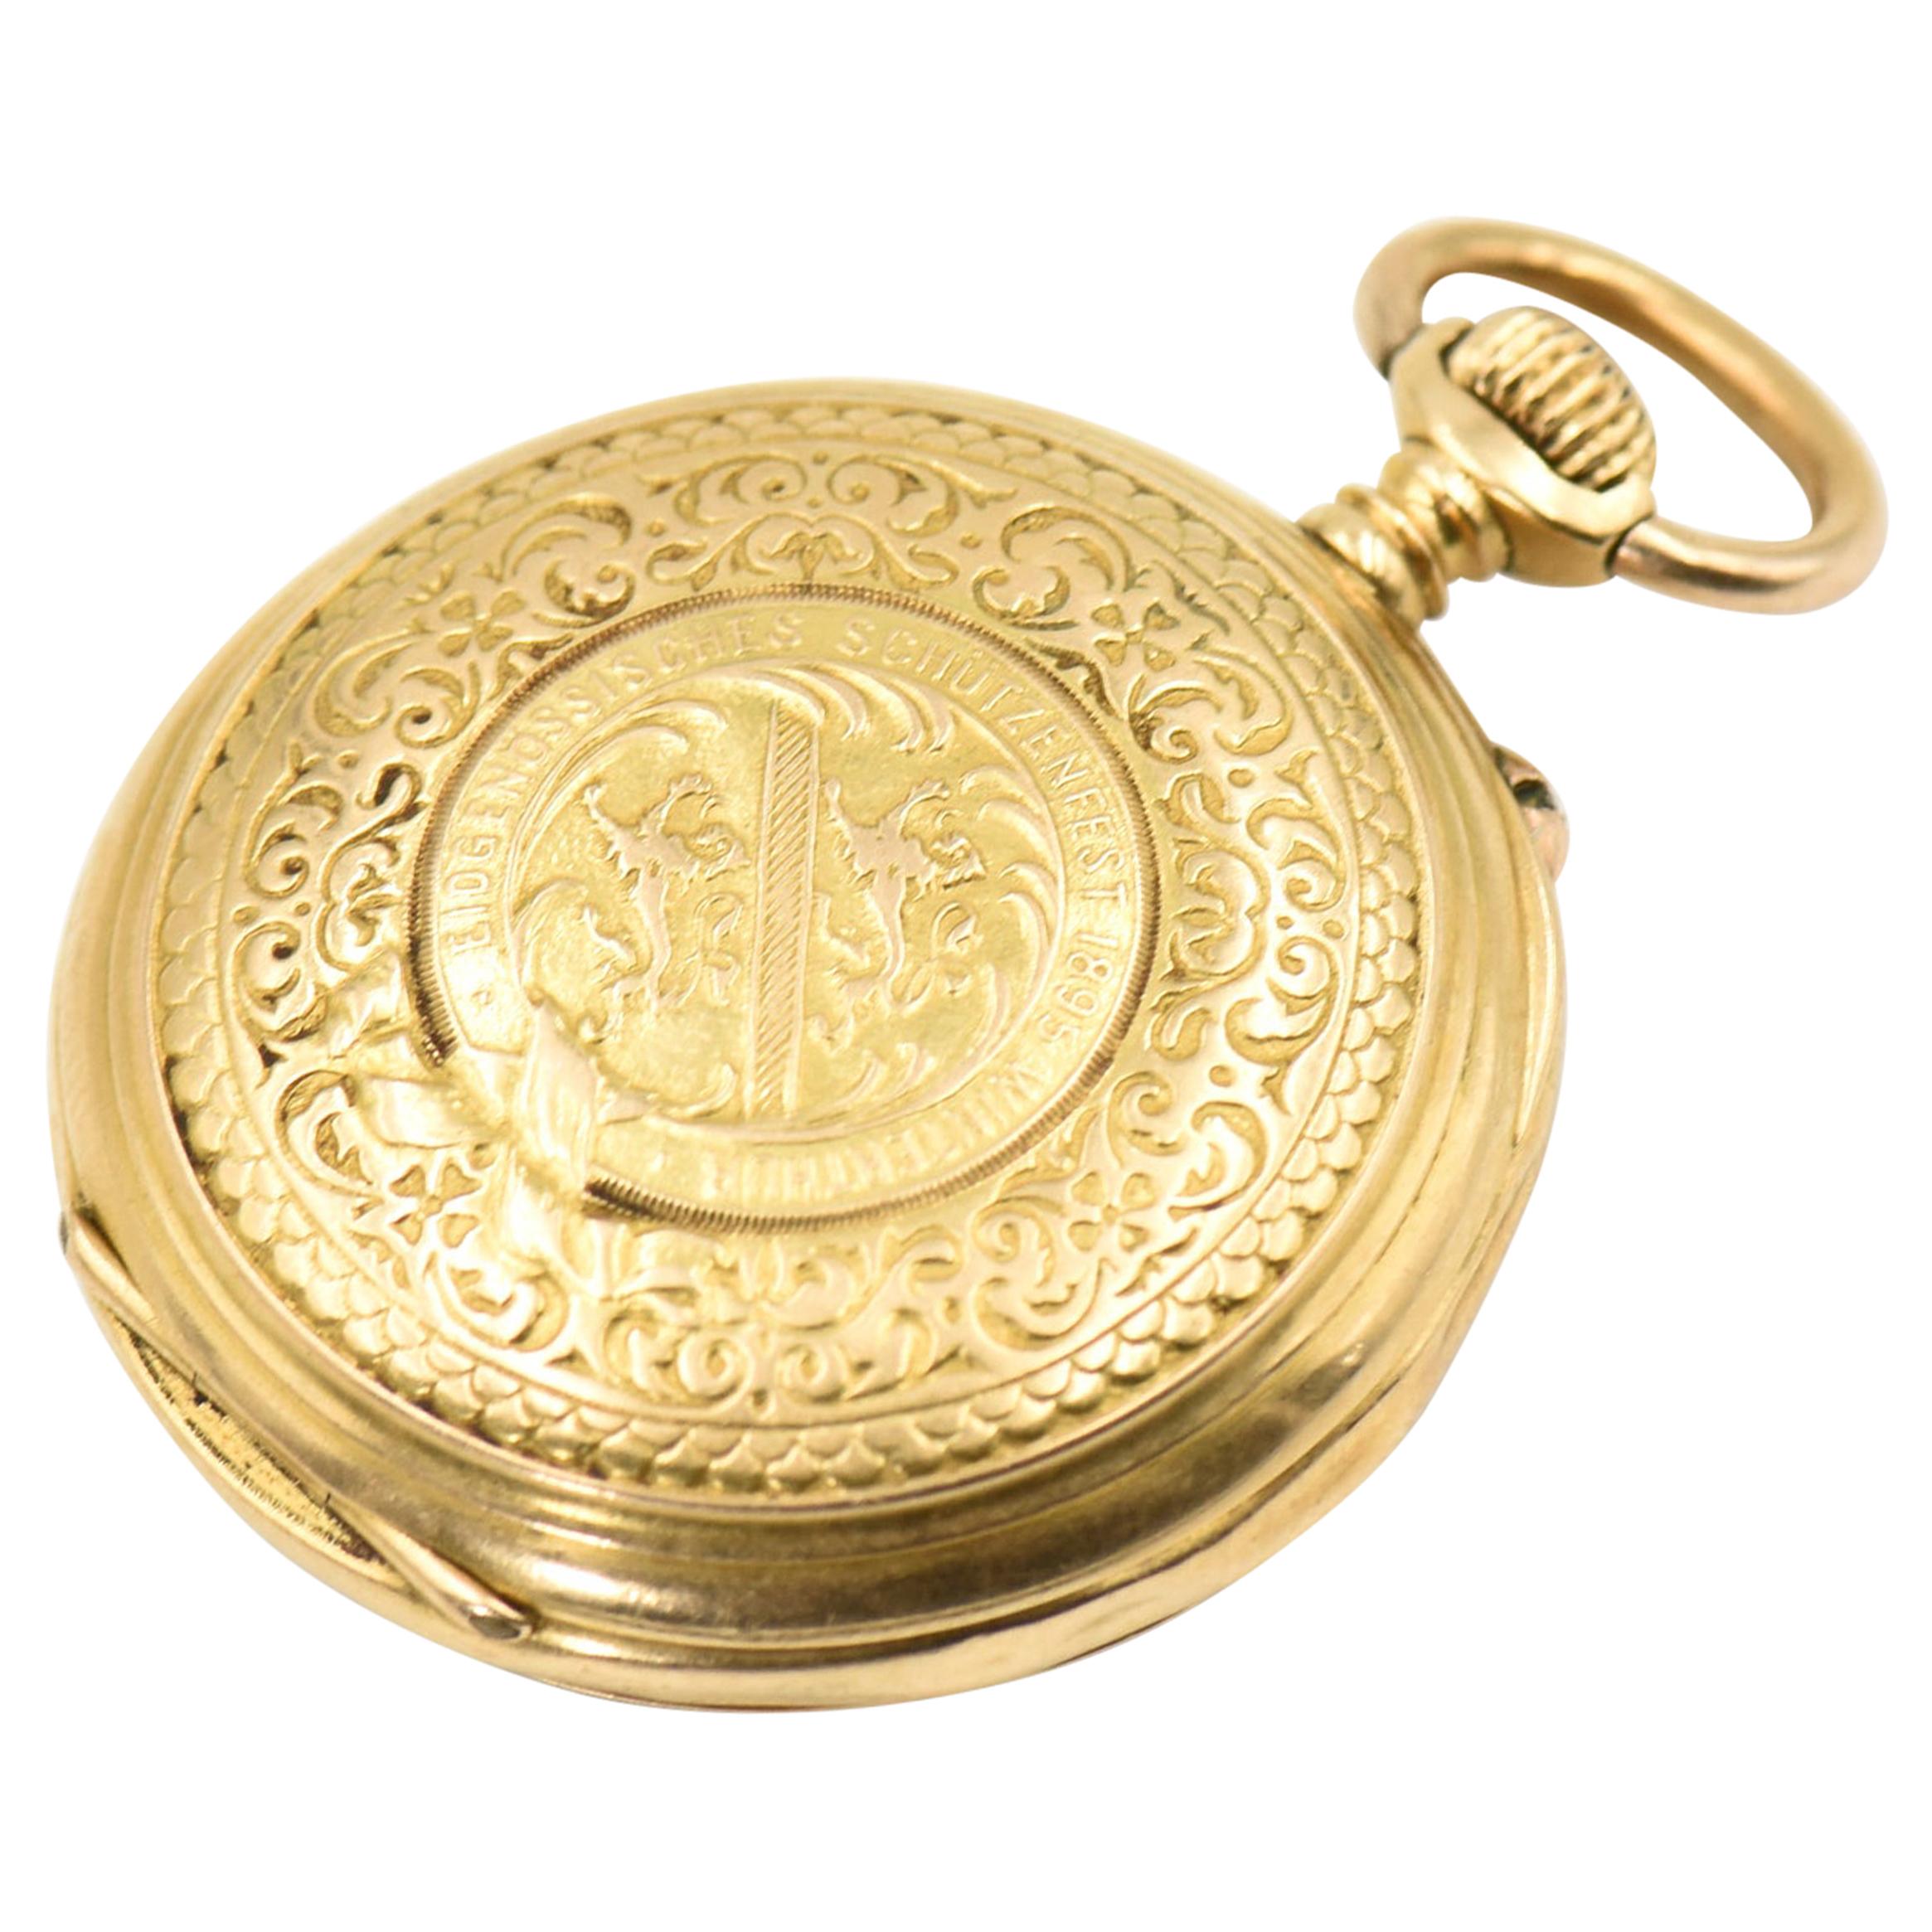 Auguste Baud Engraved Shooting Medal Winner Gold Pocket Watch, 1895